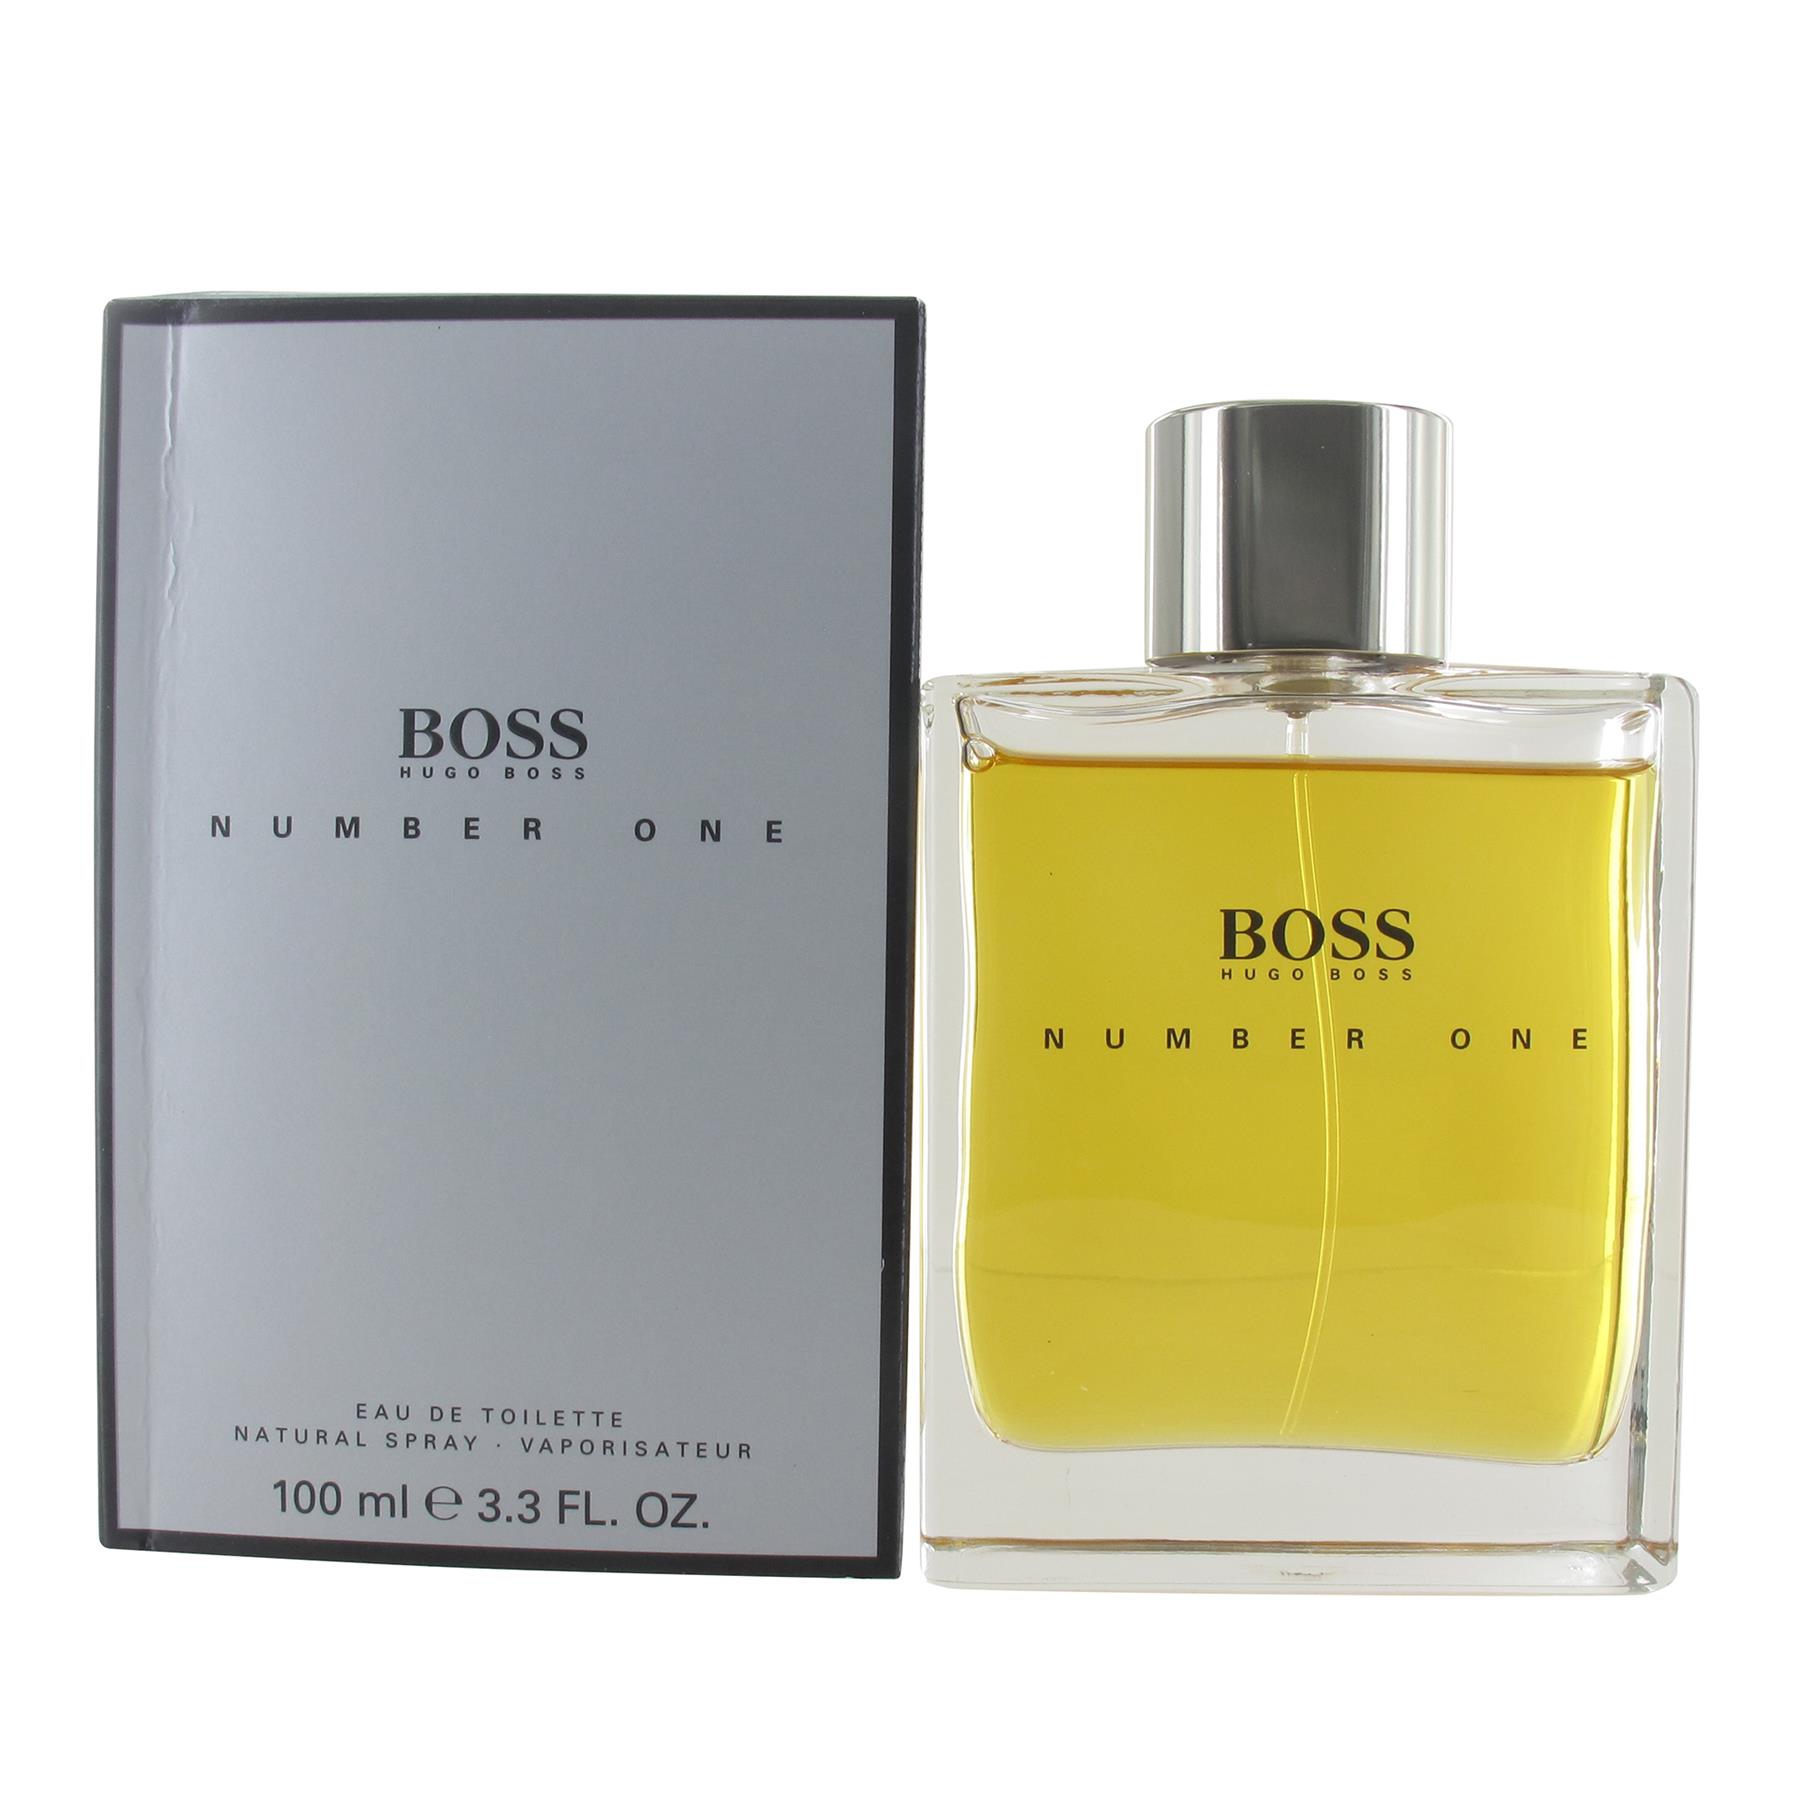 Hugo Boss Boss Number One 100ml Eau de Toilette Spray for Men from Perfume Plus Direct